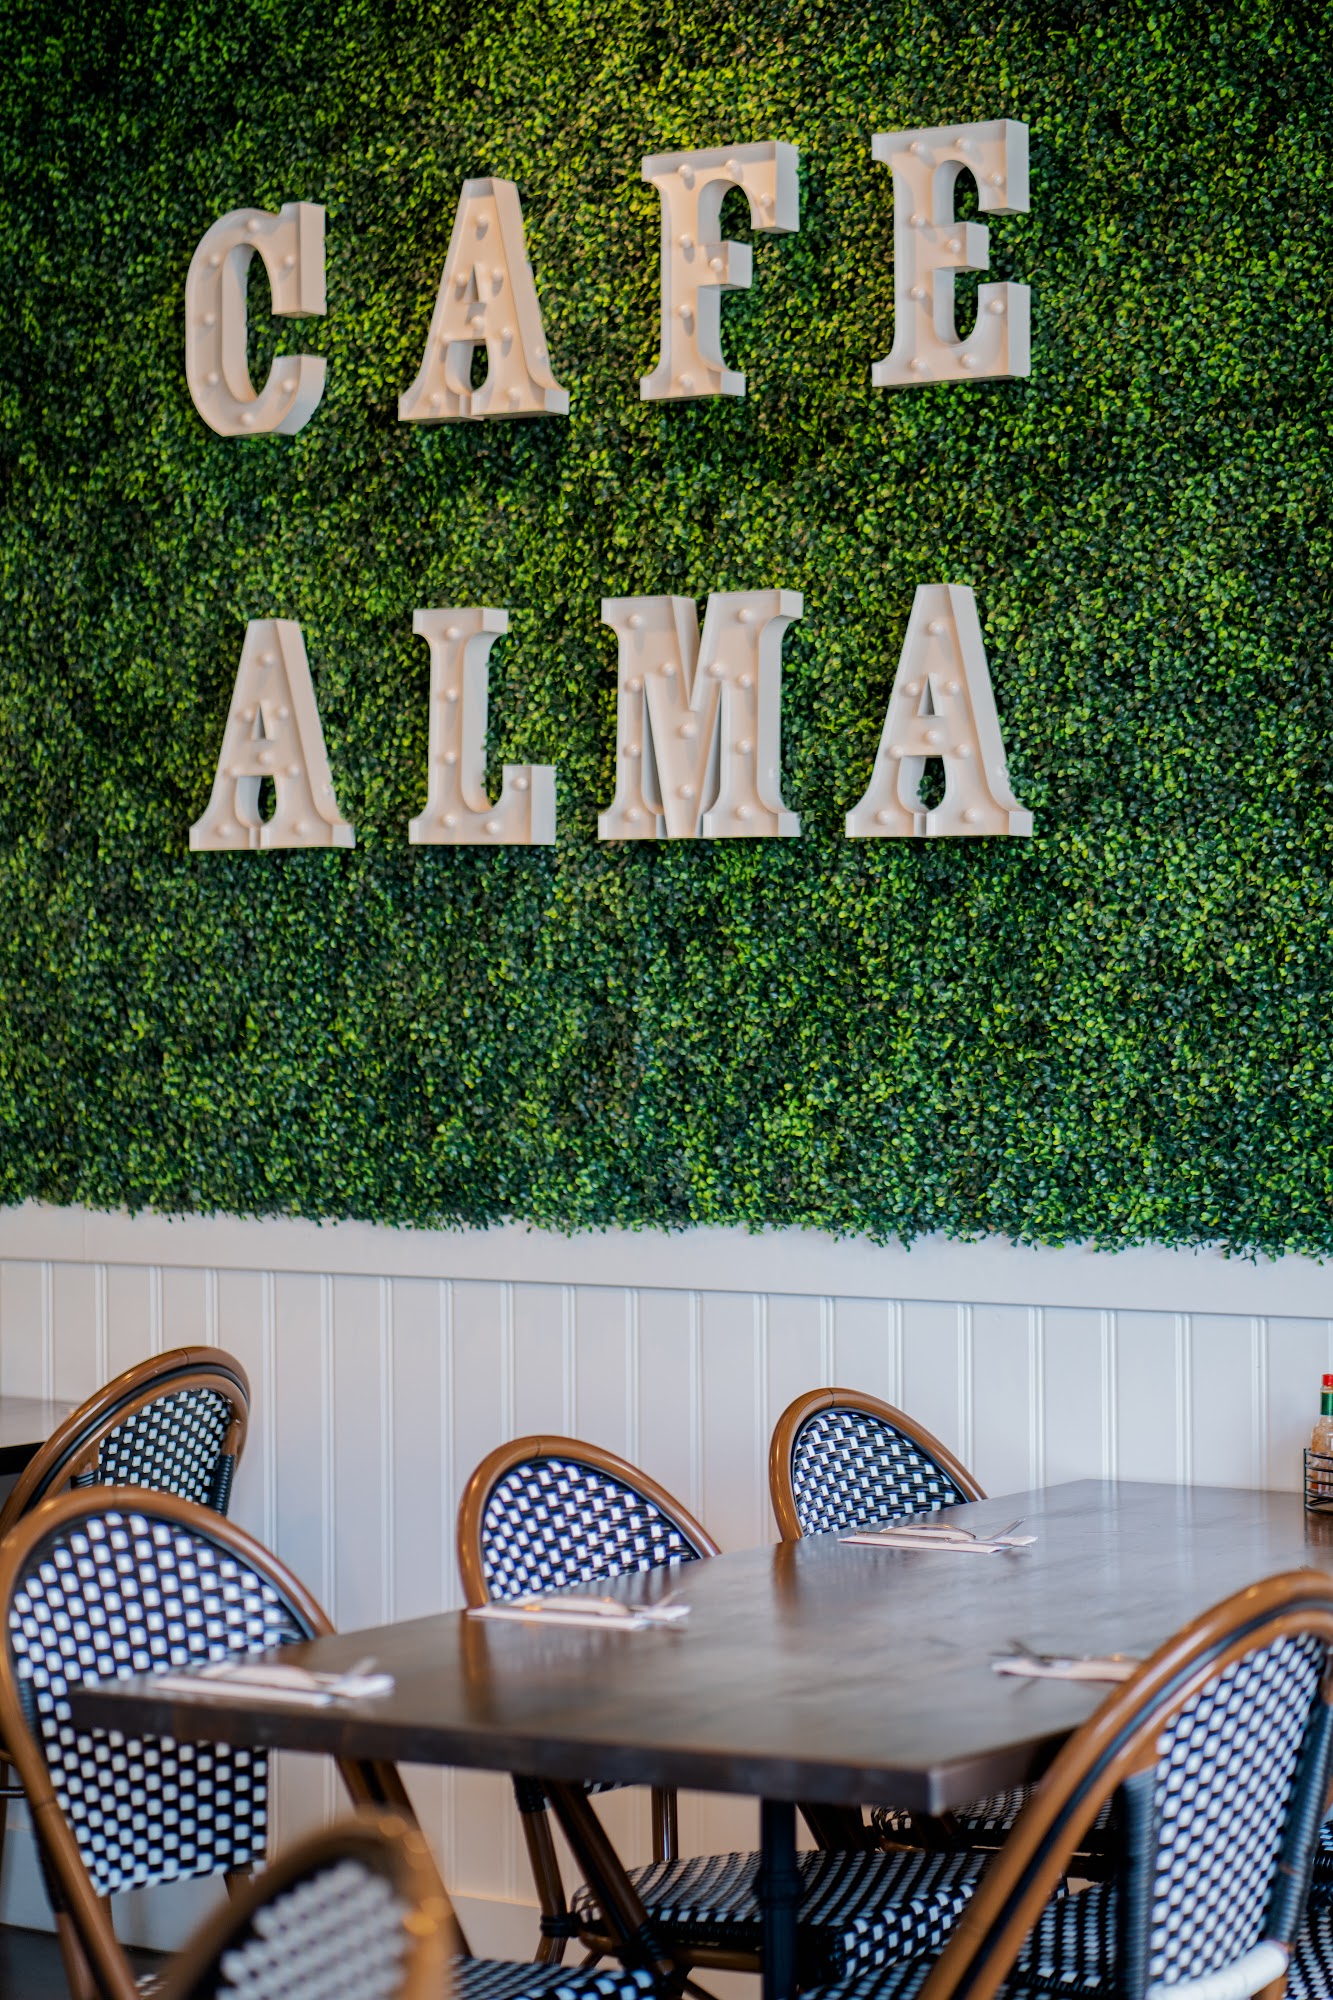 Café Alma